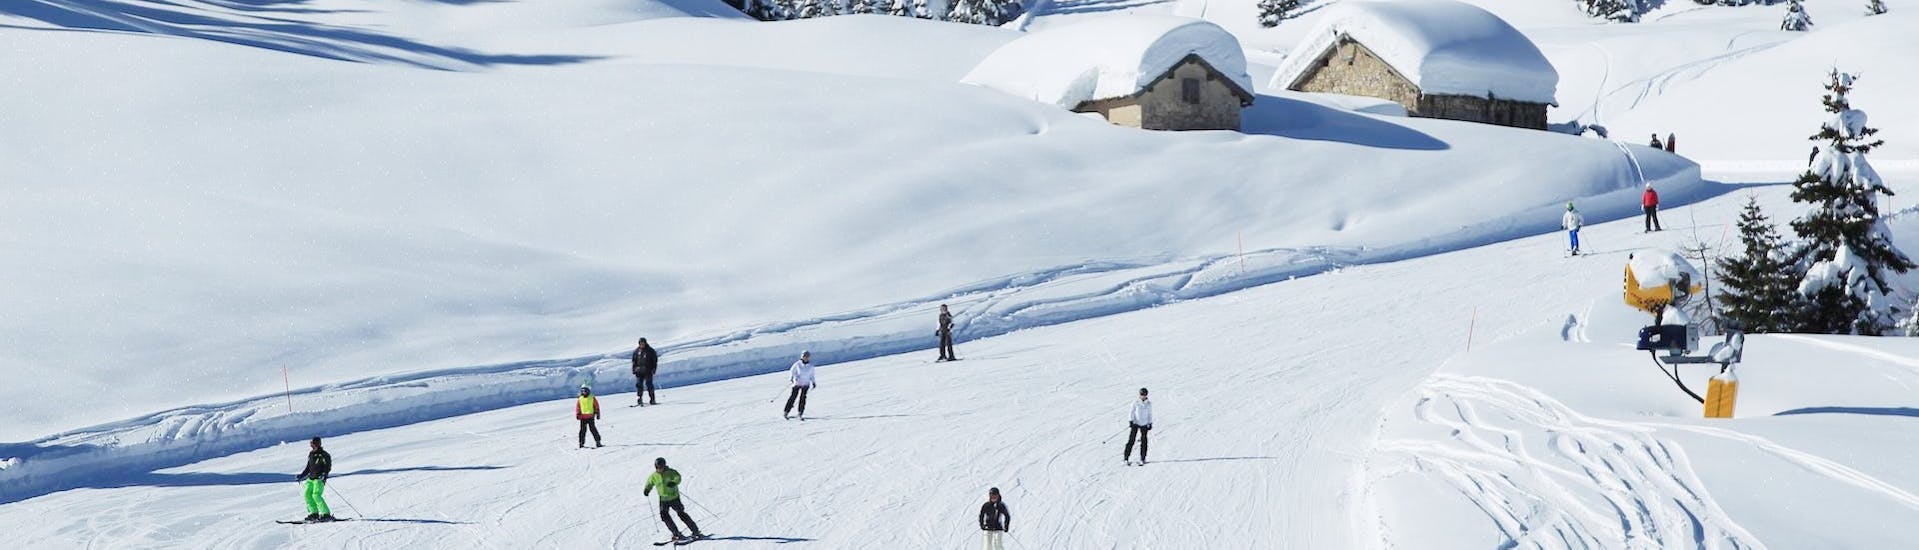 Pistes où se déroulent les Cours particuliers de ski pour Enfants (dès 4 ans) de Tous Niveaux de la Scuola Italiana Sci Folgaria-Fondo Grande.